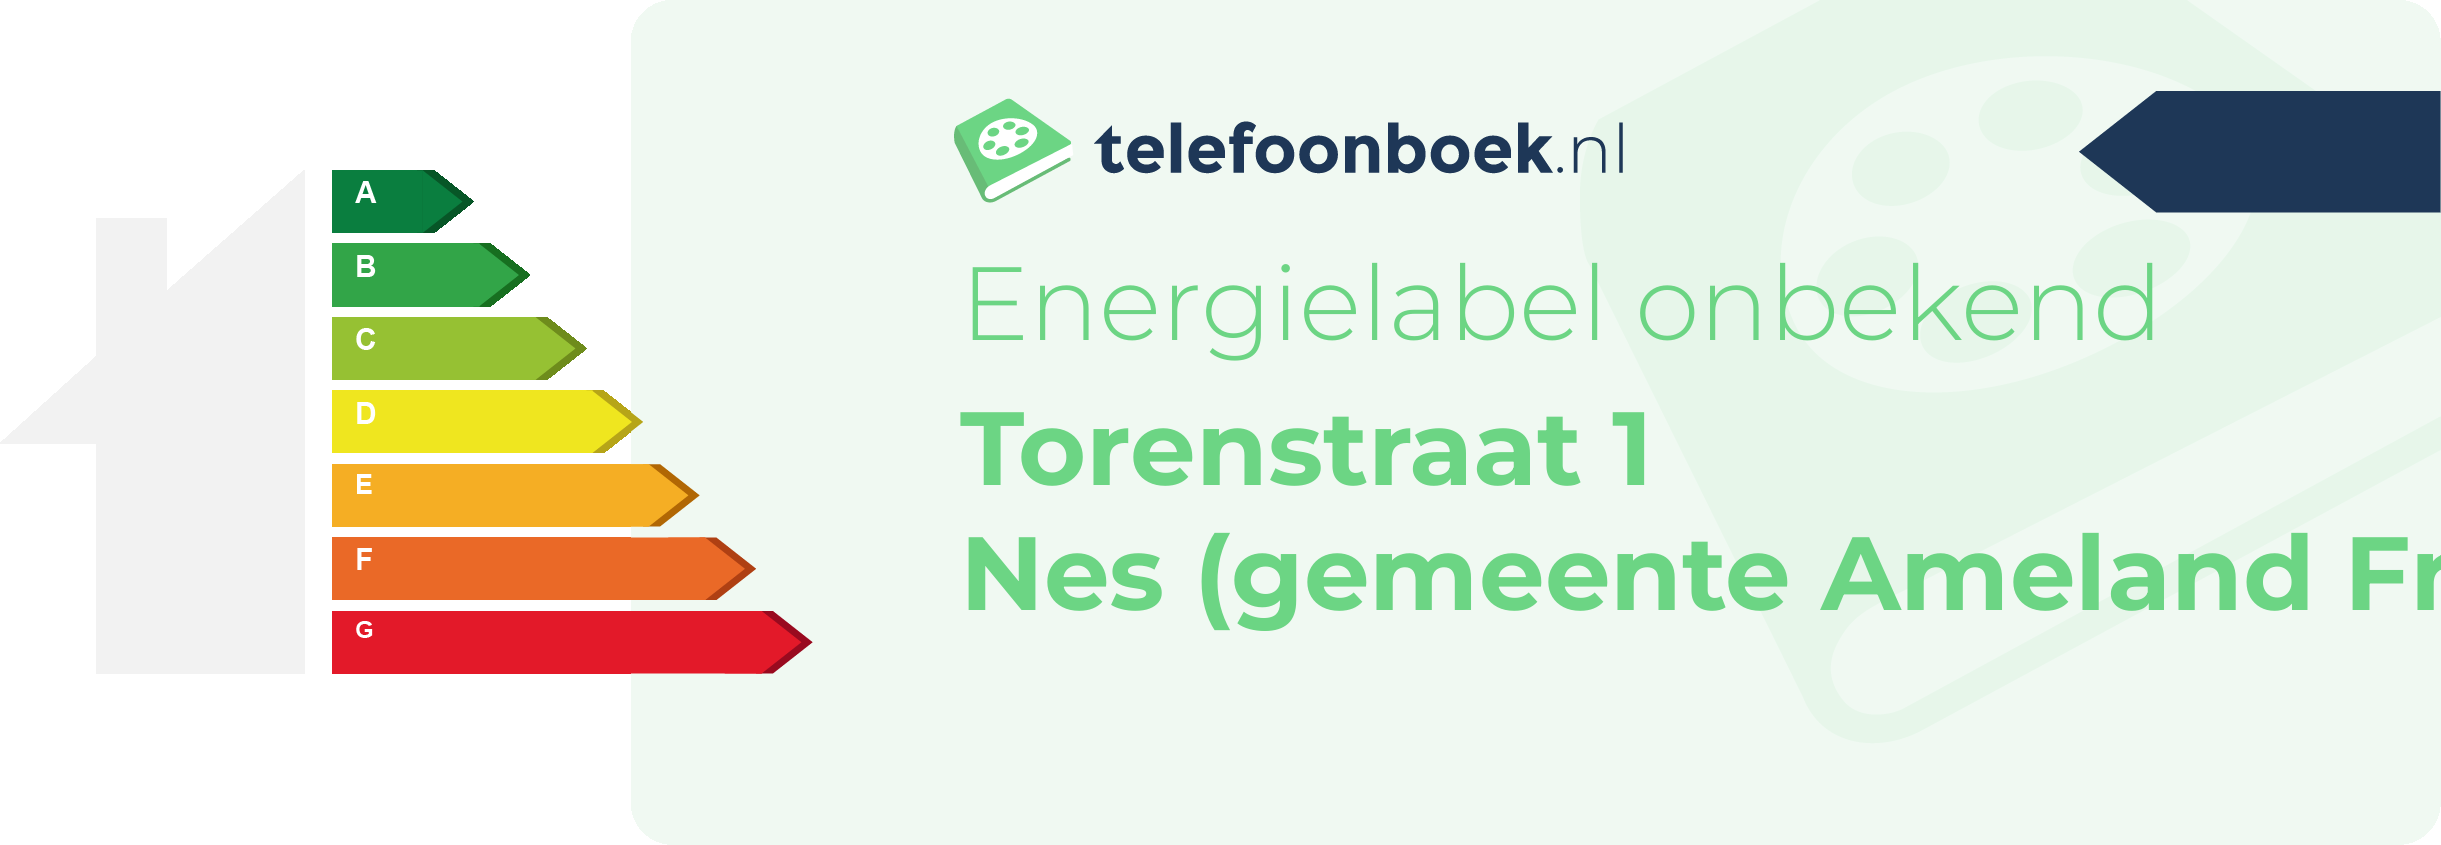 Energielabel Torenstraat 1 Nes (gemeente Ameland Friesland)